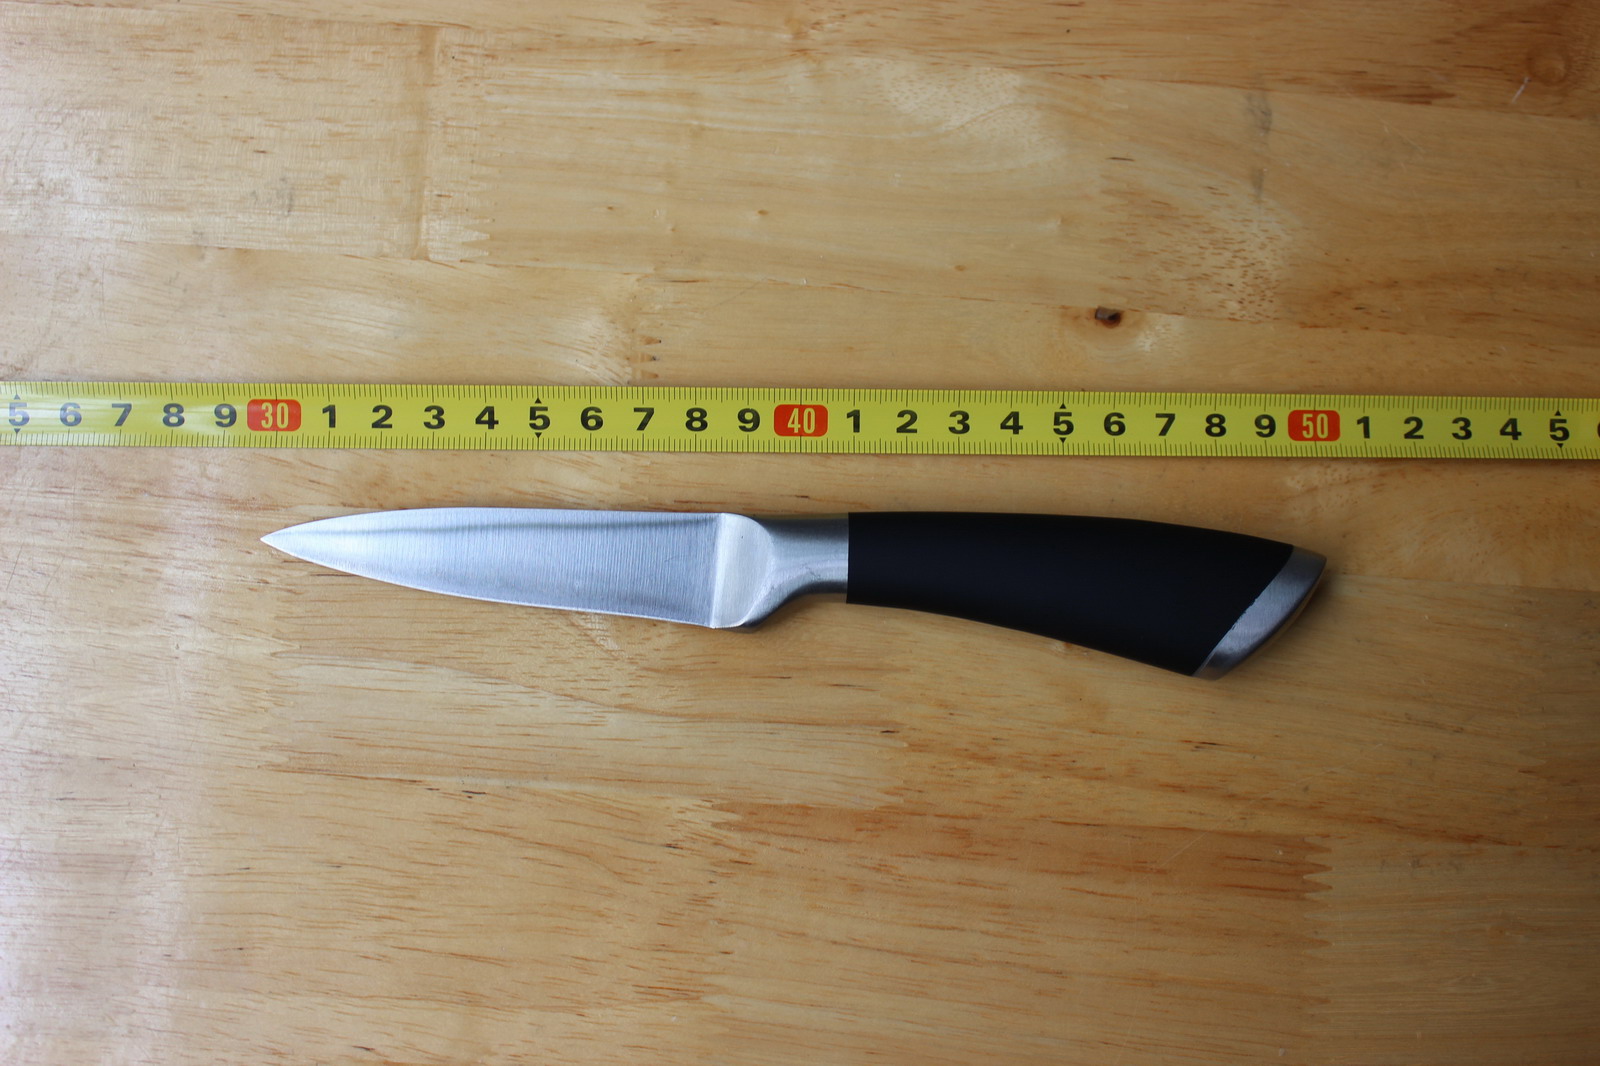 SP6003-5 peeling knife